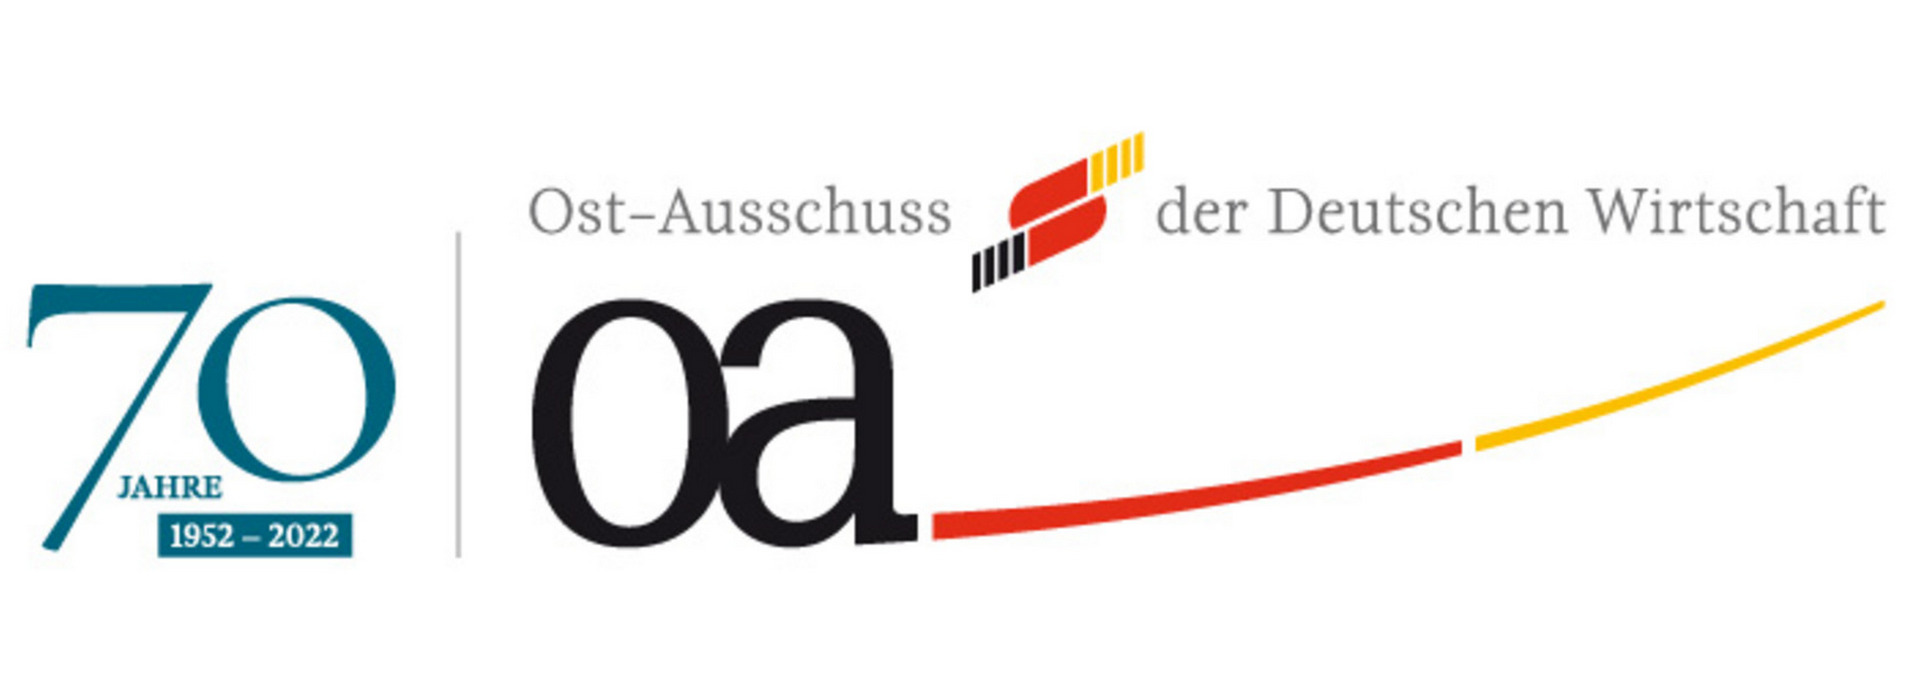 GOLAW стала членом провідної німецької бізнес-асоціації Ost-Ausschuss der Deutschen Wirtschaft